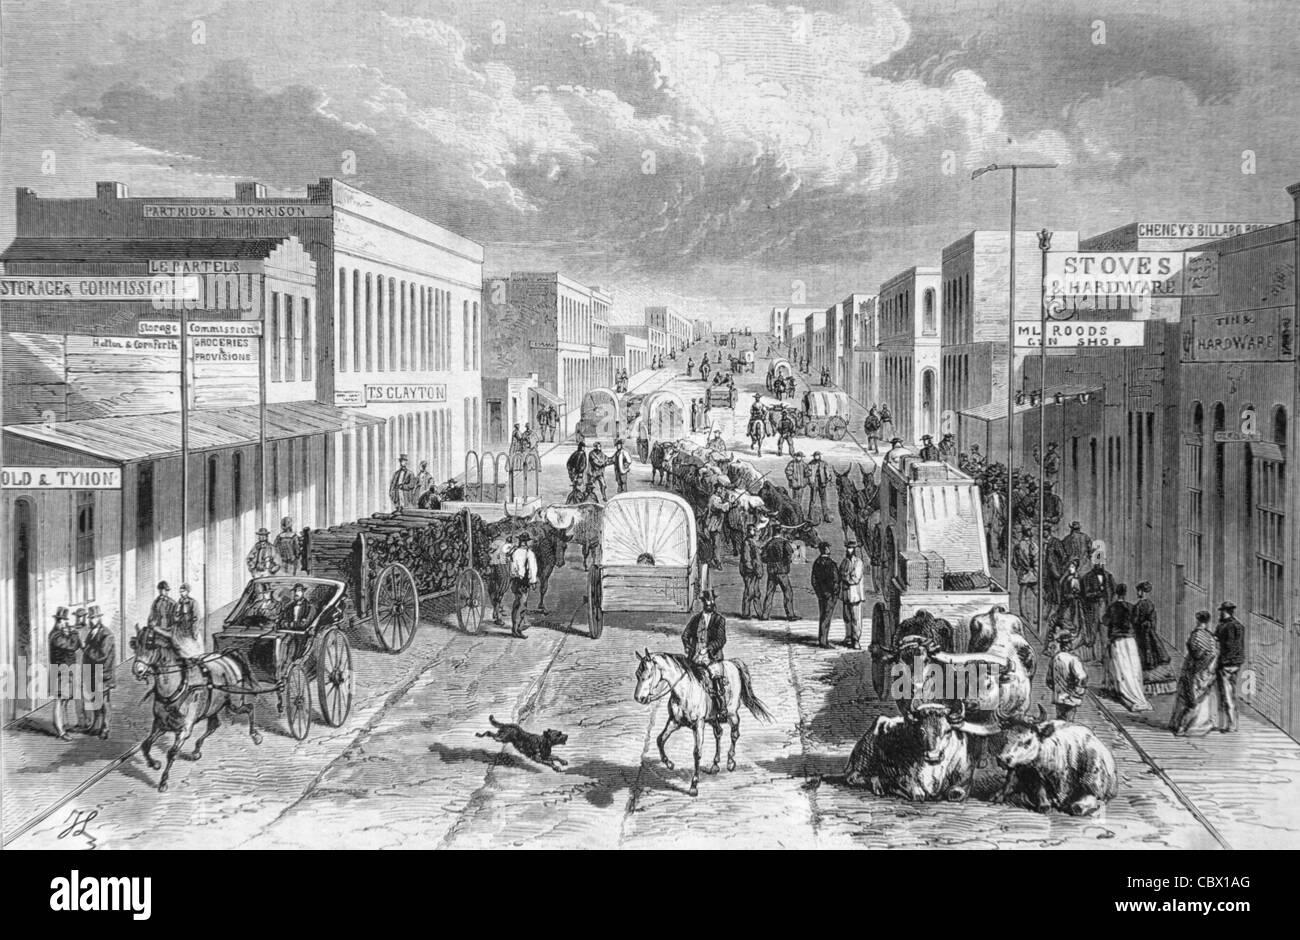 Main Street o Street Scene a Denver, Colorado, Stati Uniti d'America, Stati Uniti, Stati Uniti o Stati Uniti. 1868 incisione o illustrazione d'epoca Foto Stock